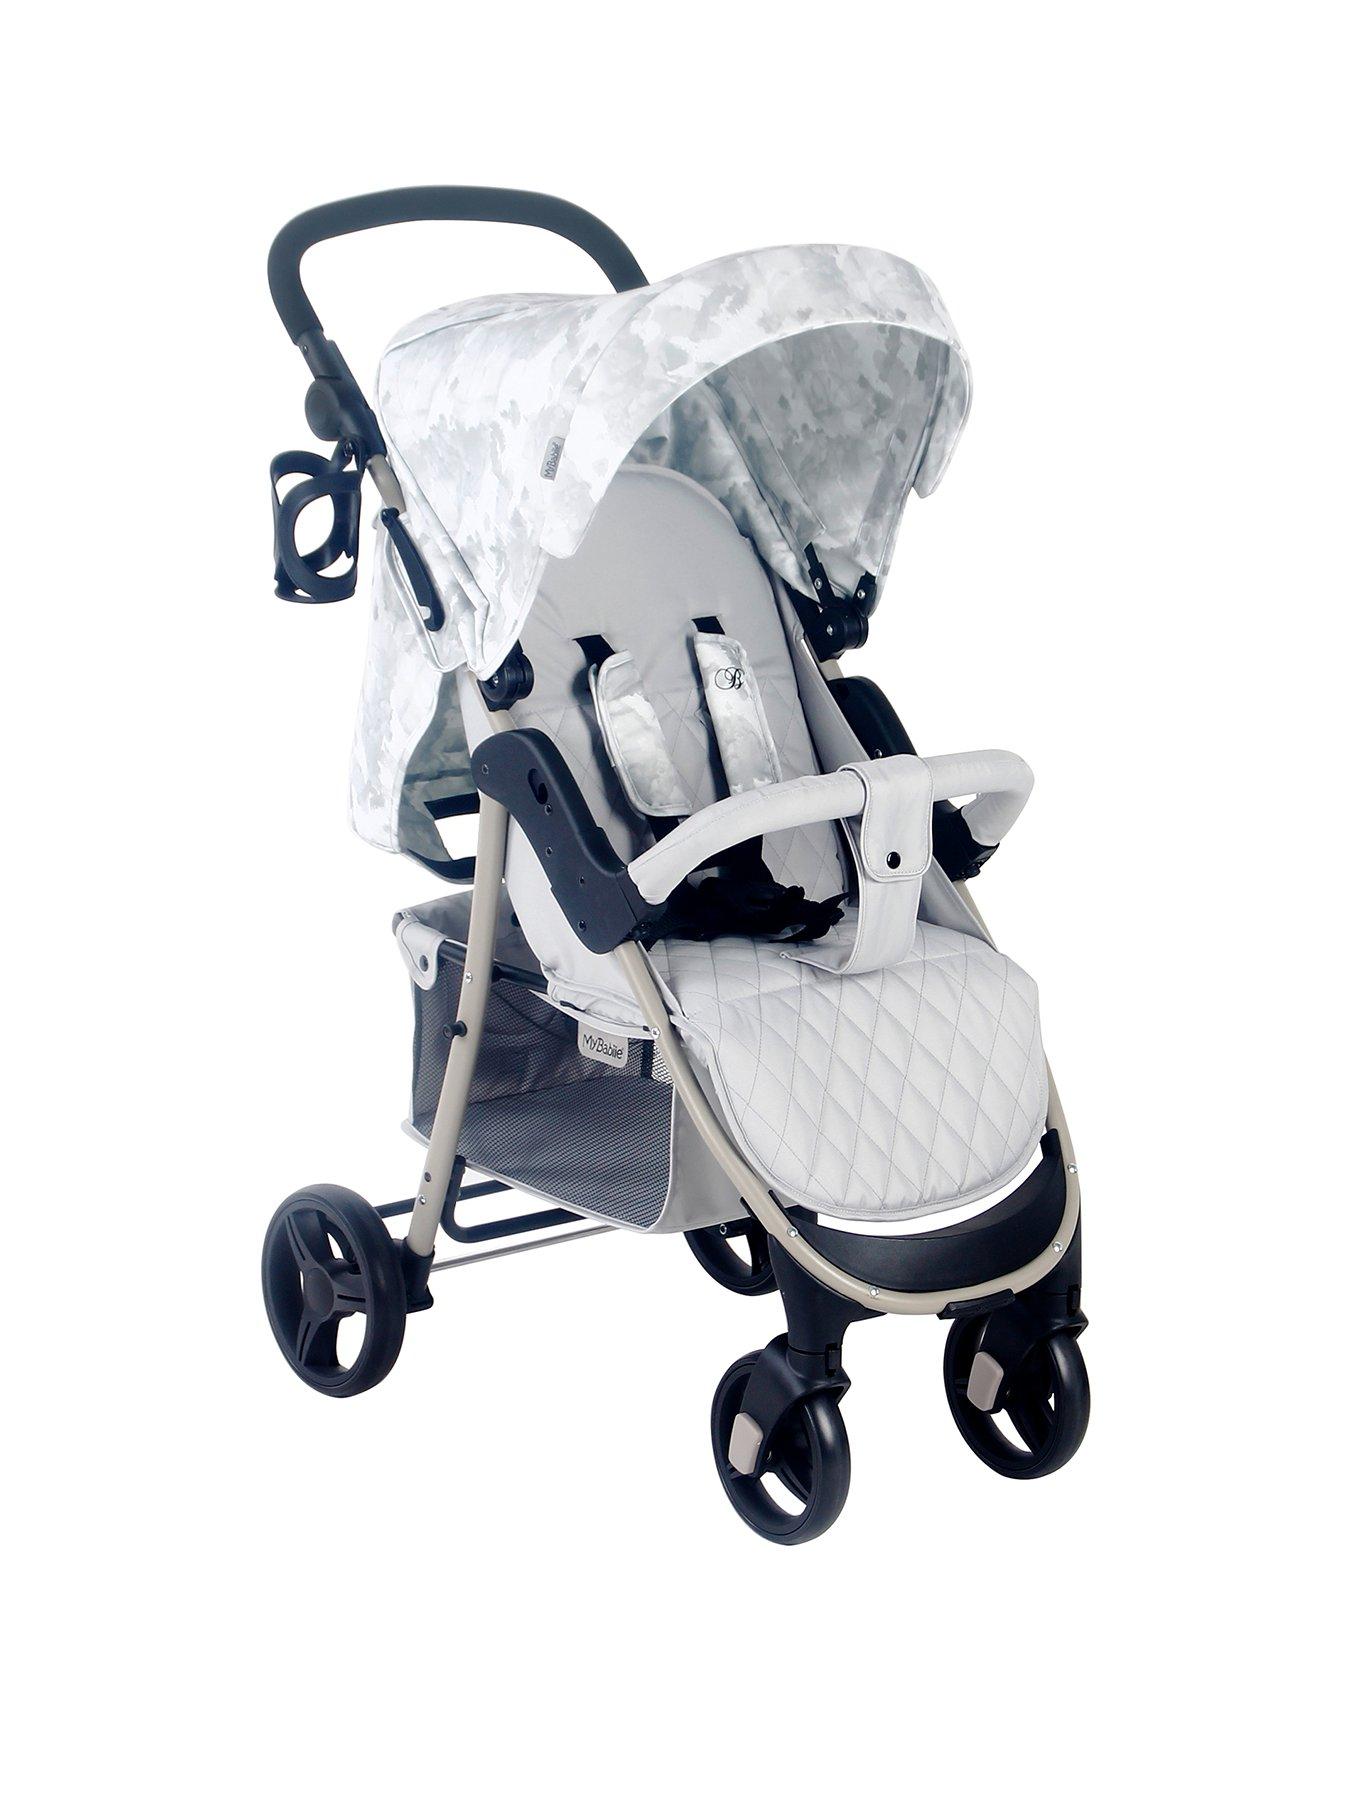 My Babiie Billie Faiers MB400 Grey Melange Pushchair Stroller 